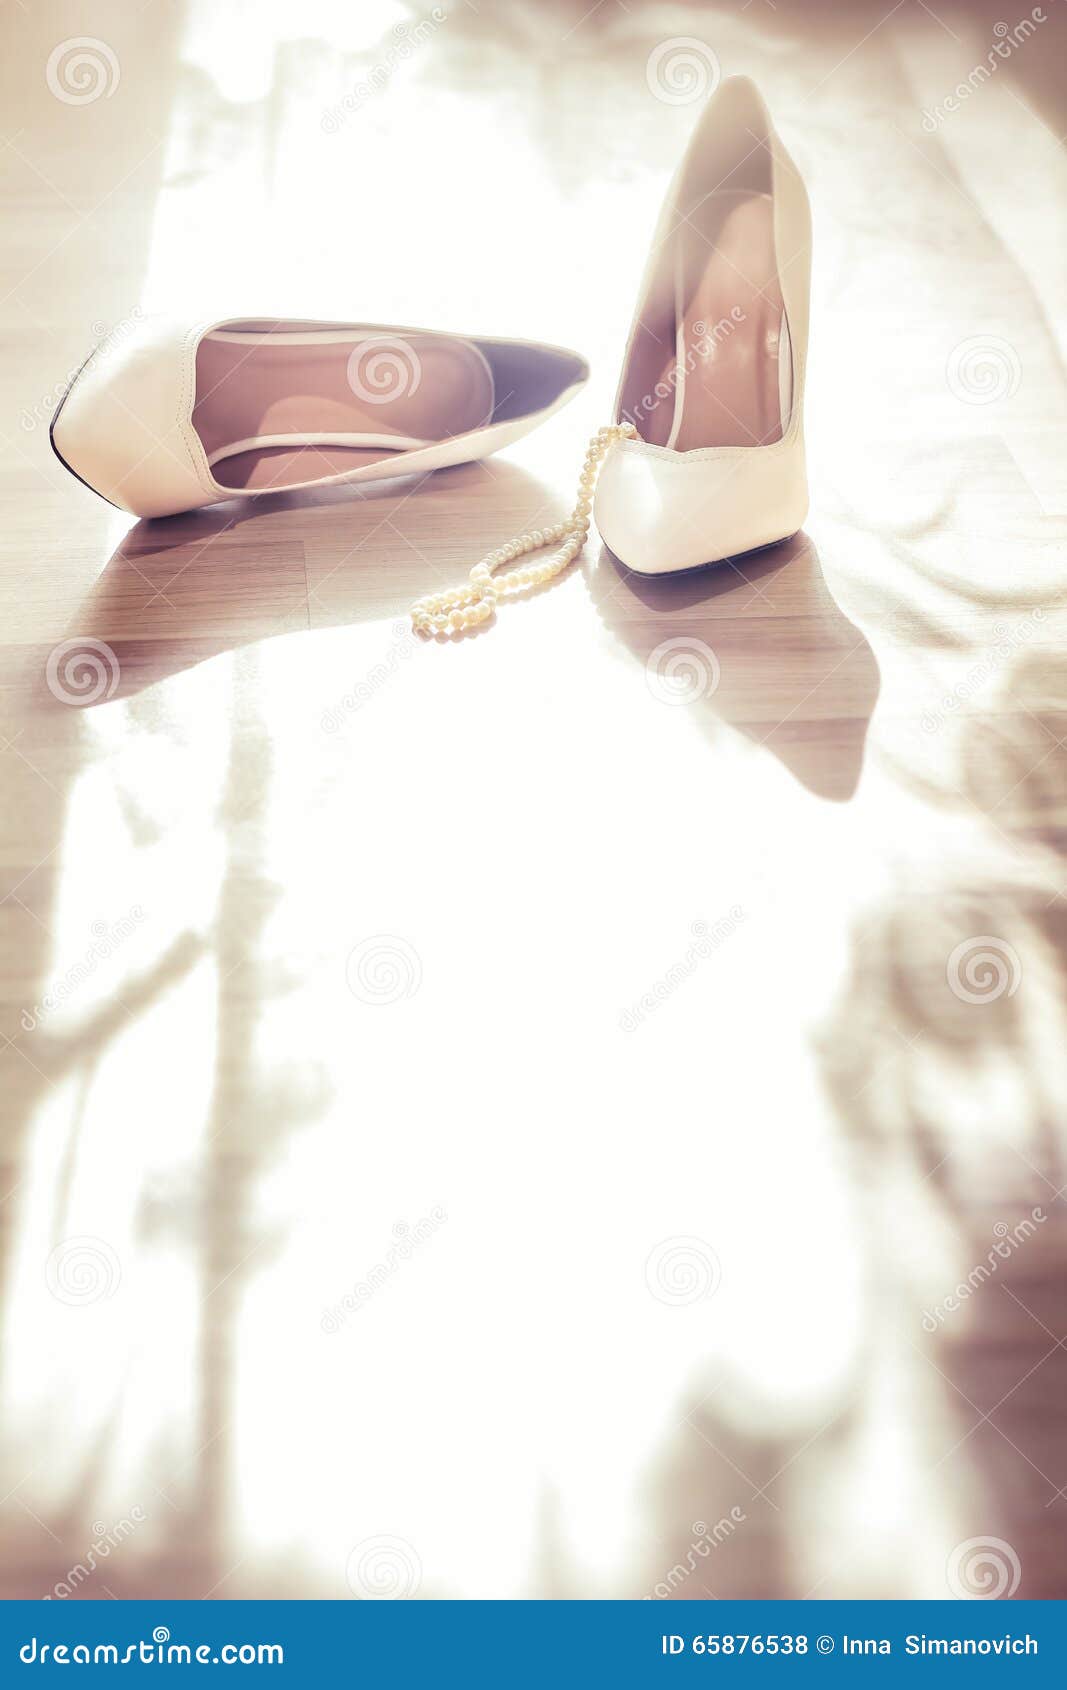 Wedding white shoes stock photo. Image of ceremony, beads - 65876538